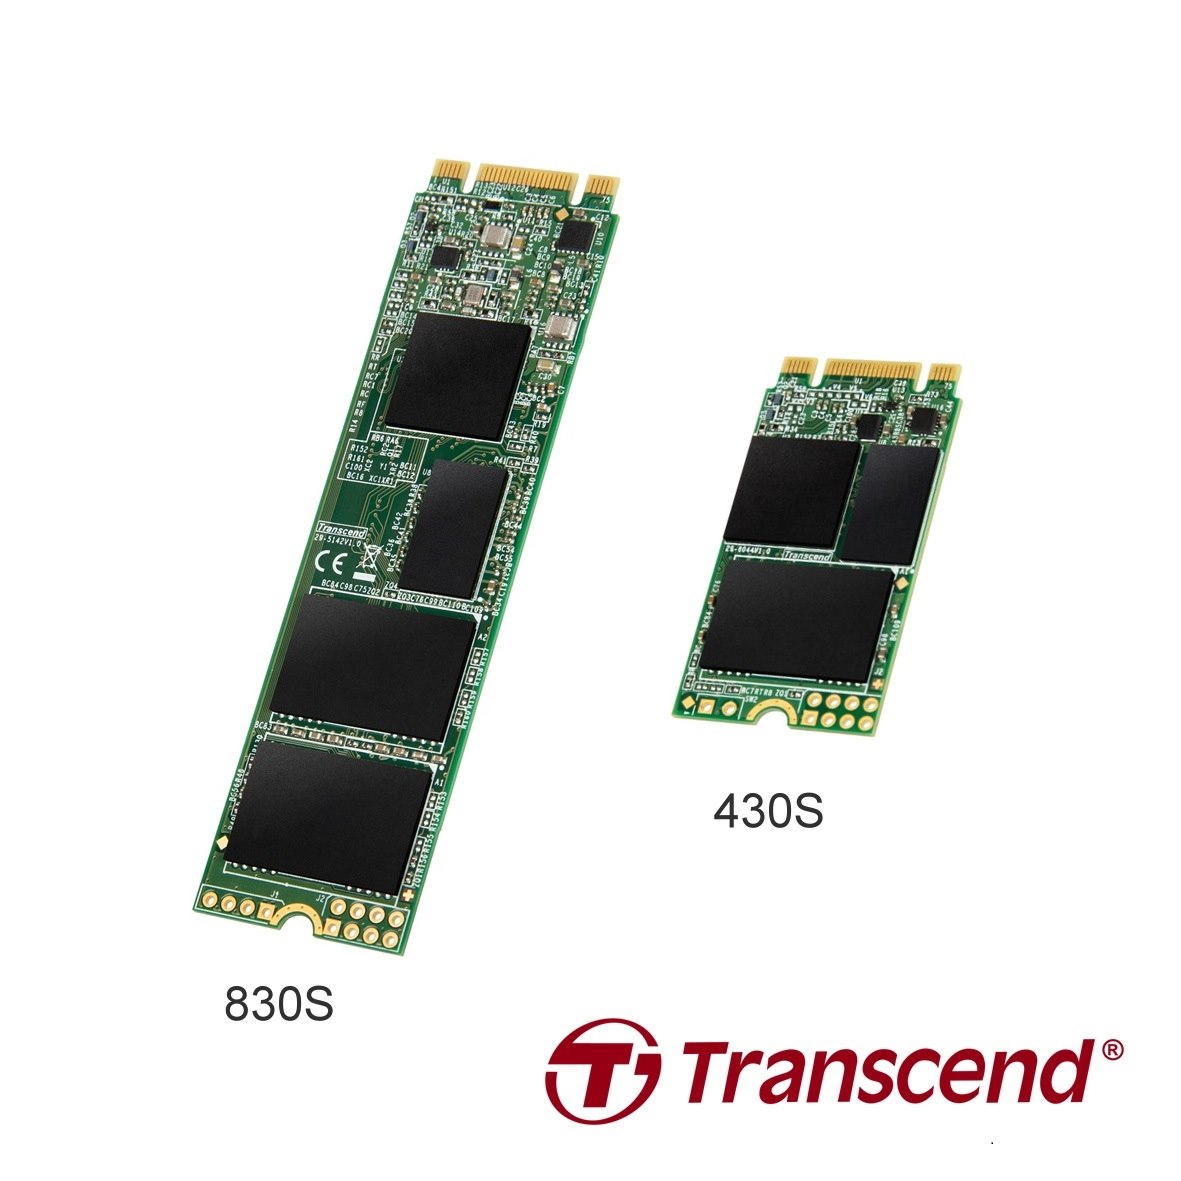 ทรานส์เซนด์เปิดตัว M.2 SSD 430S และ 830S ไดร์ฟสำหรับฟอร์มแฟคเตอร์ขนาดเล็ก